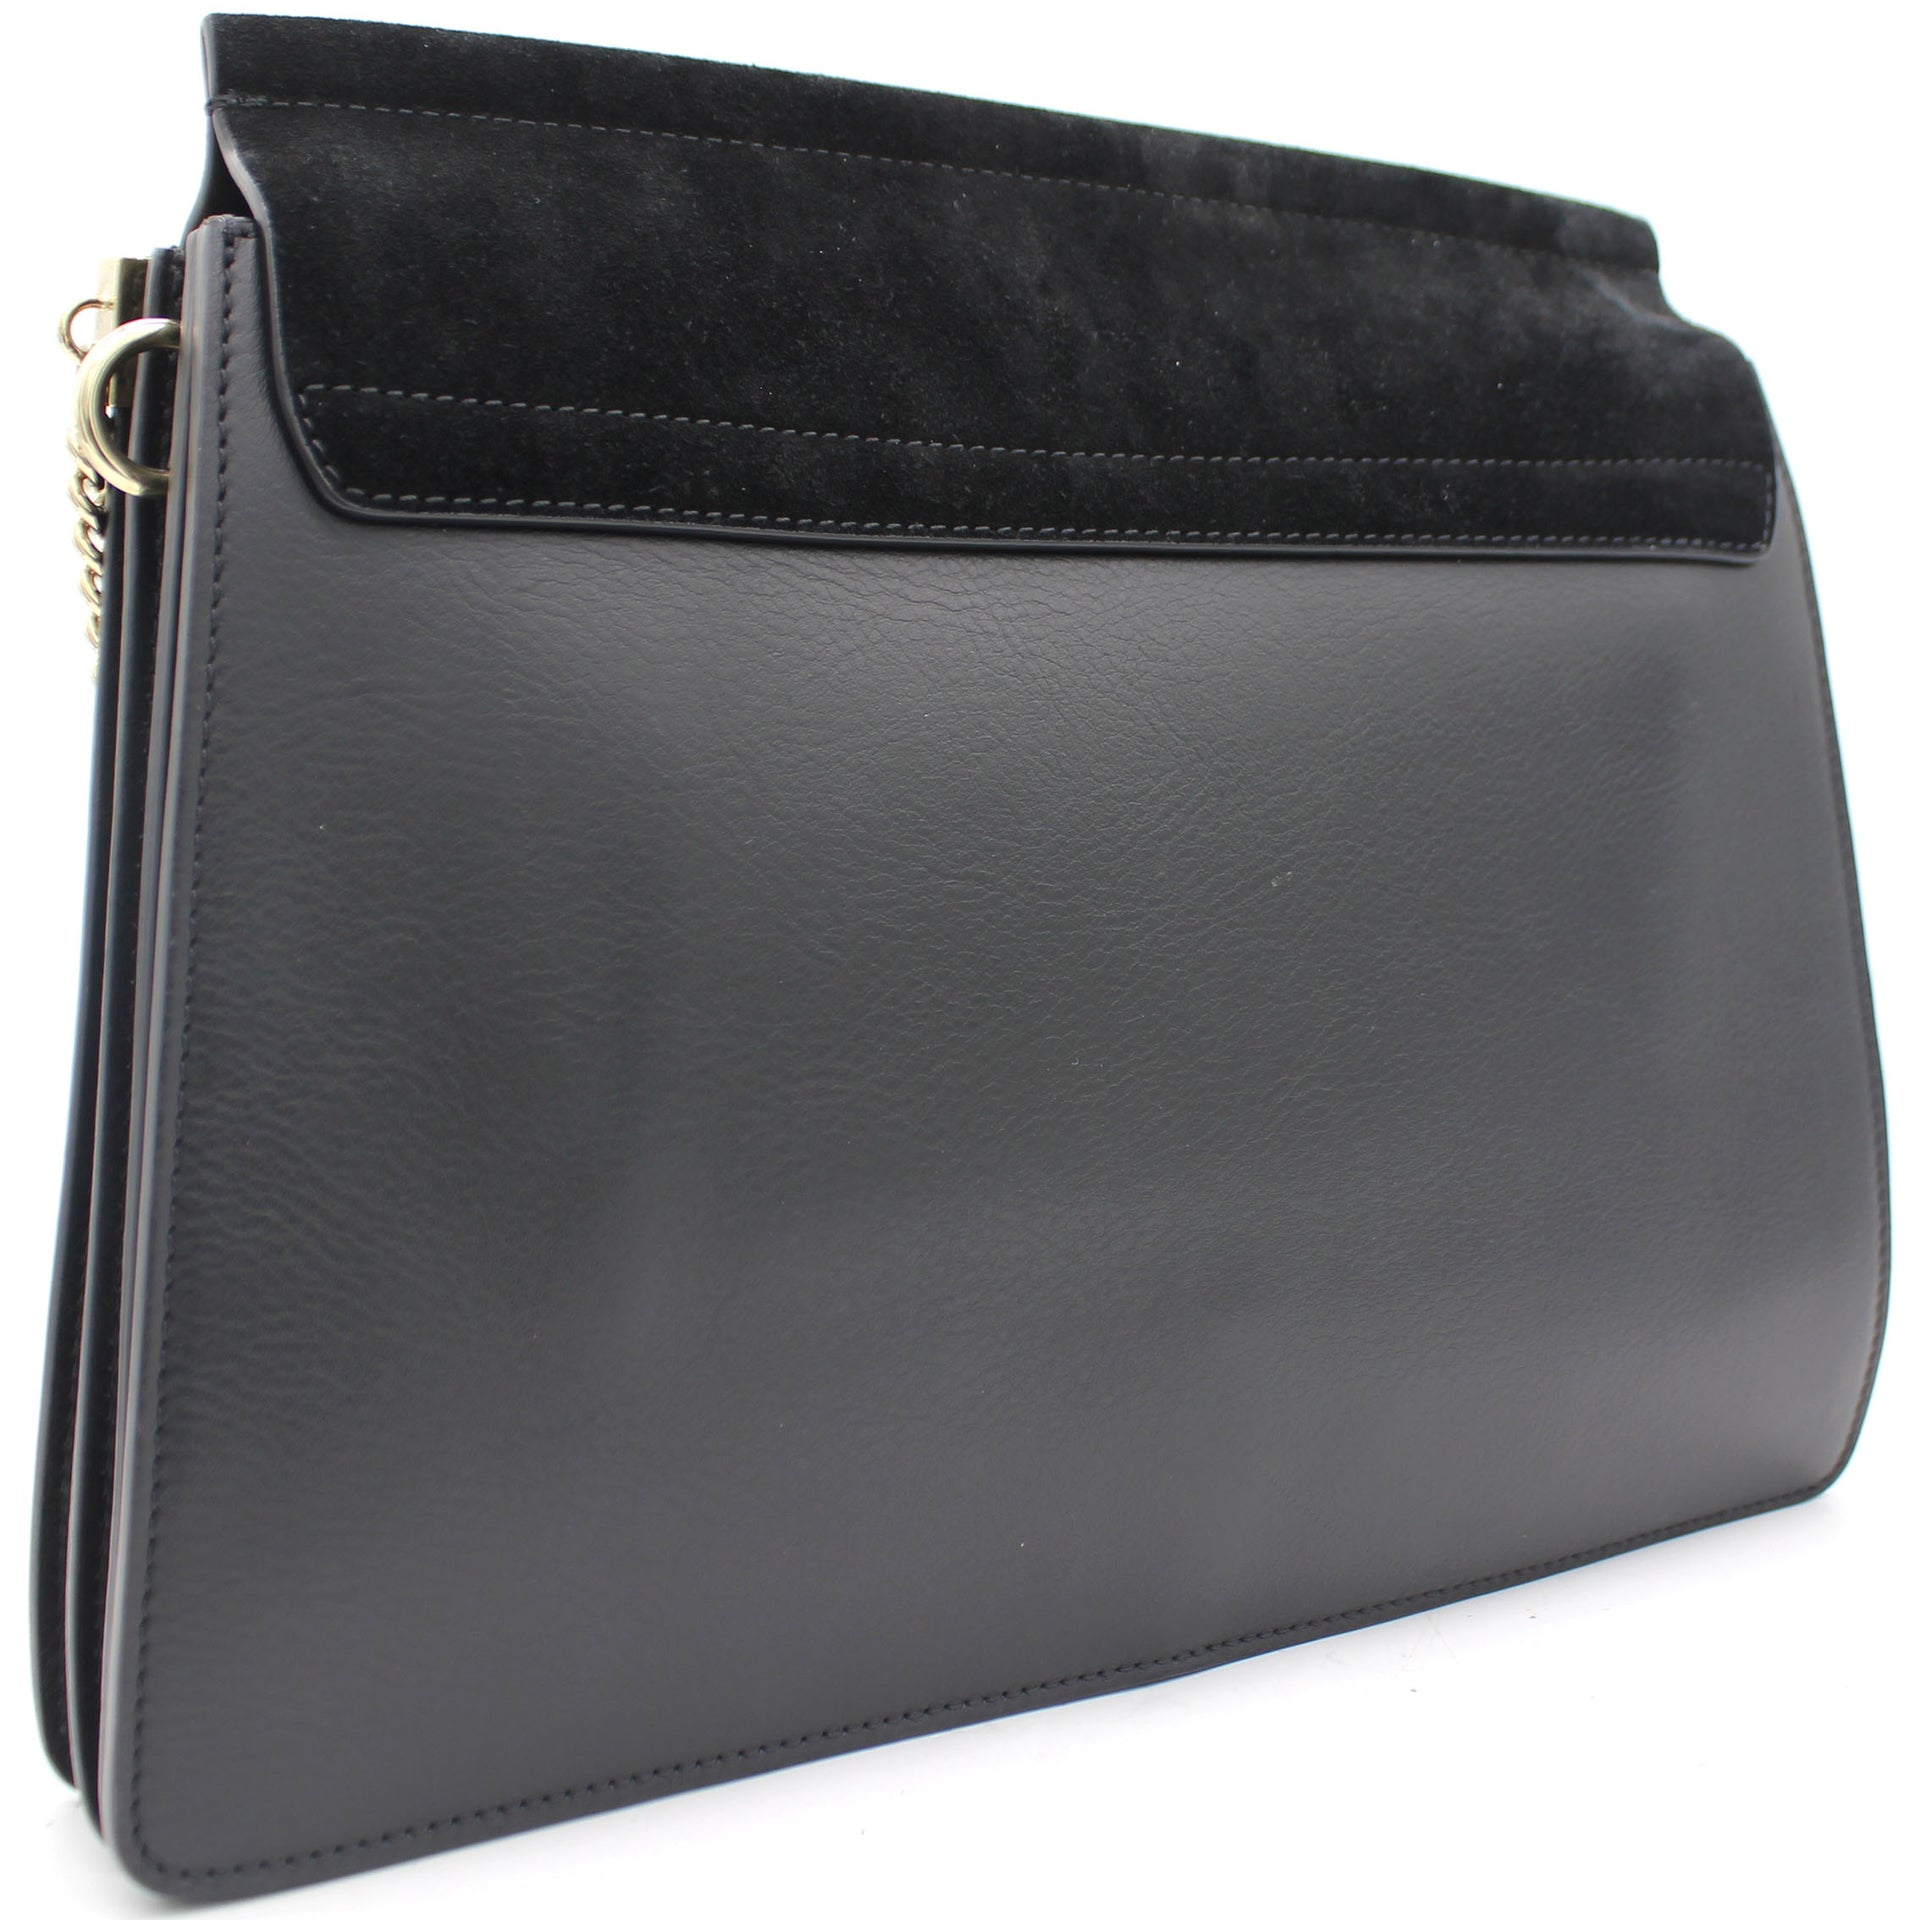 Black Leather and Suede Medium Faye Shoulder Bag